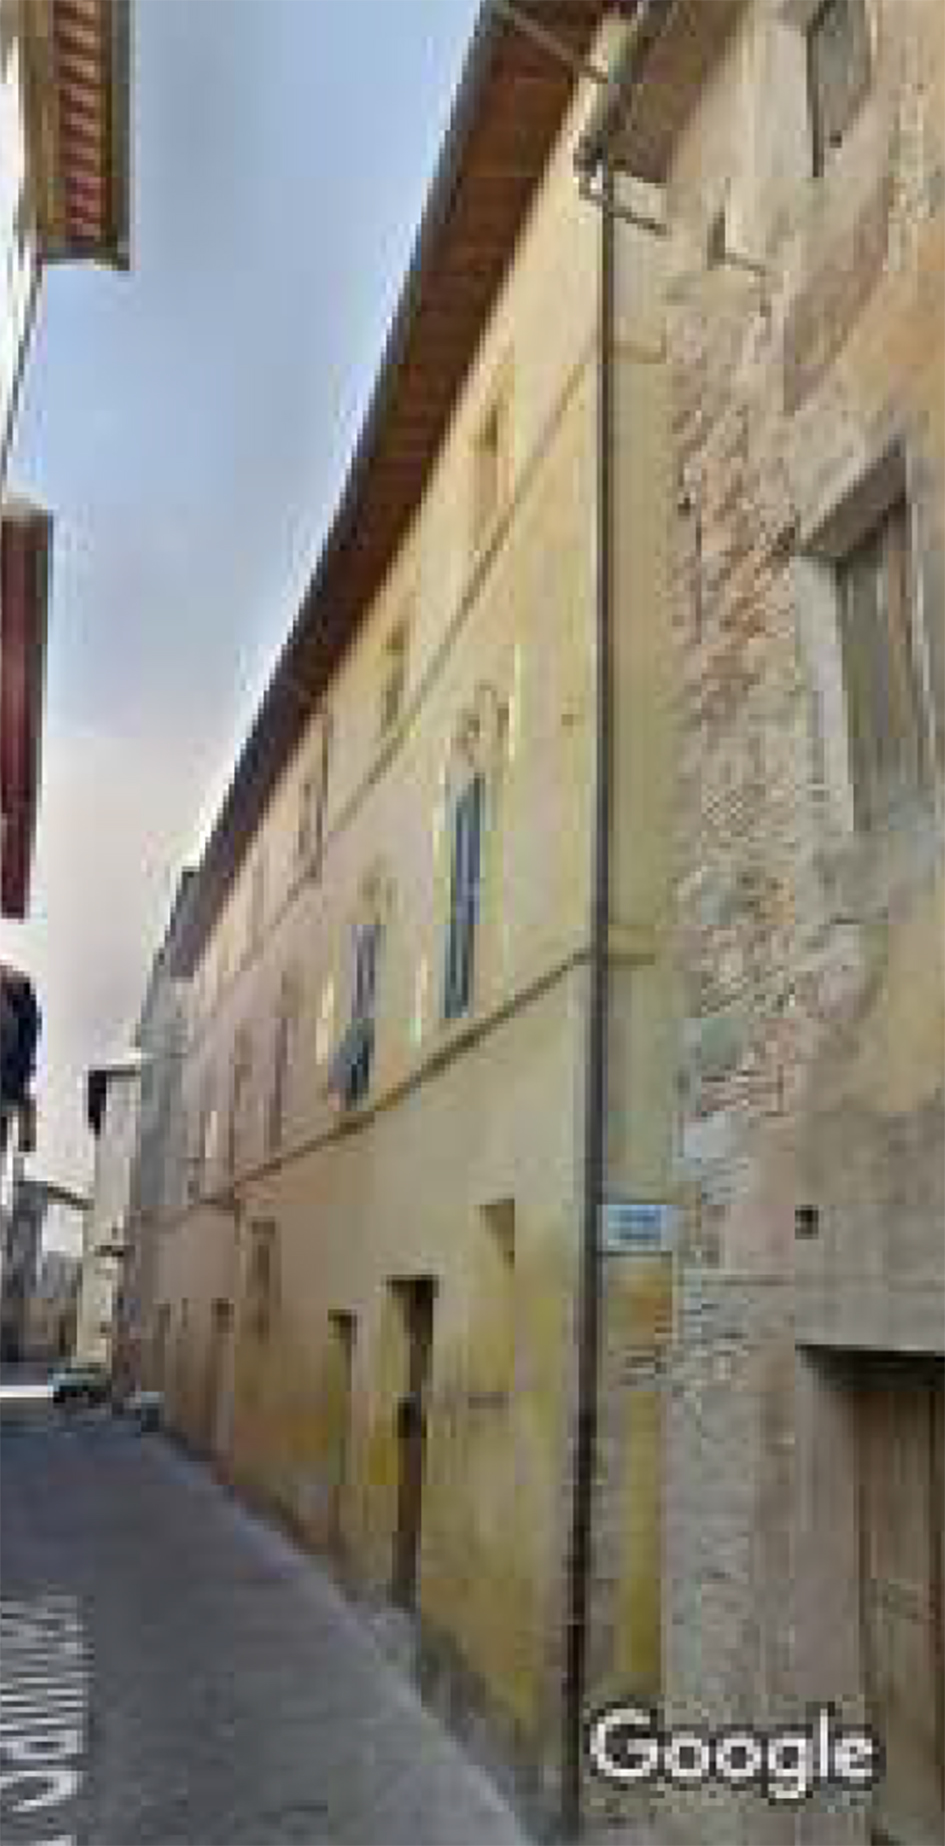 Palazzo Sileoni (palazzo, signorile) - San Severino Marche (MC) 